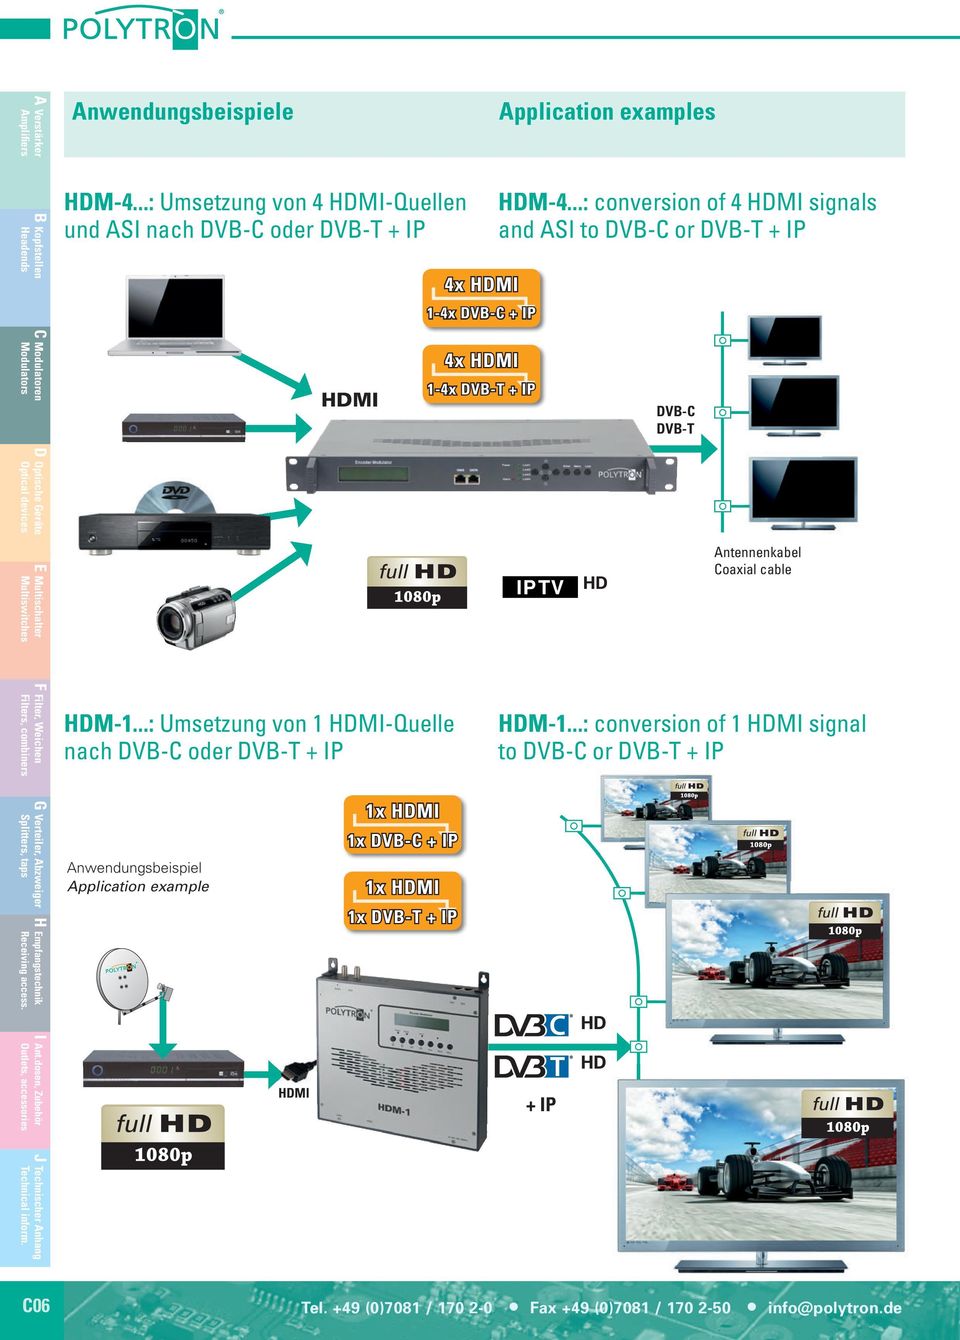 ..: Umsetzung von 1 HDMI-Quelle nach DVB-C oder DVB-T + IP HDM-1.